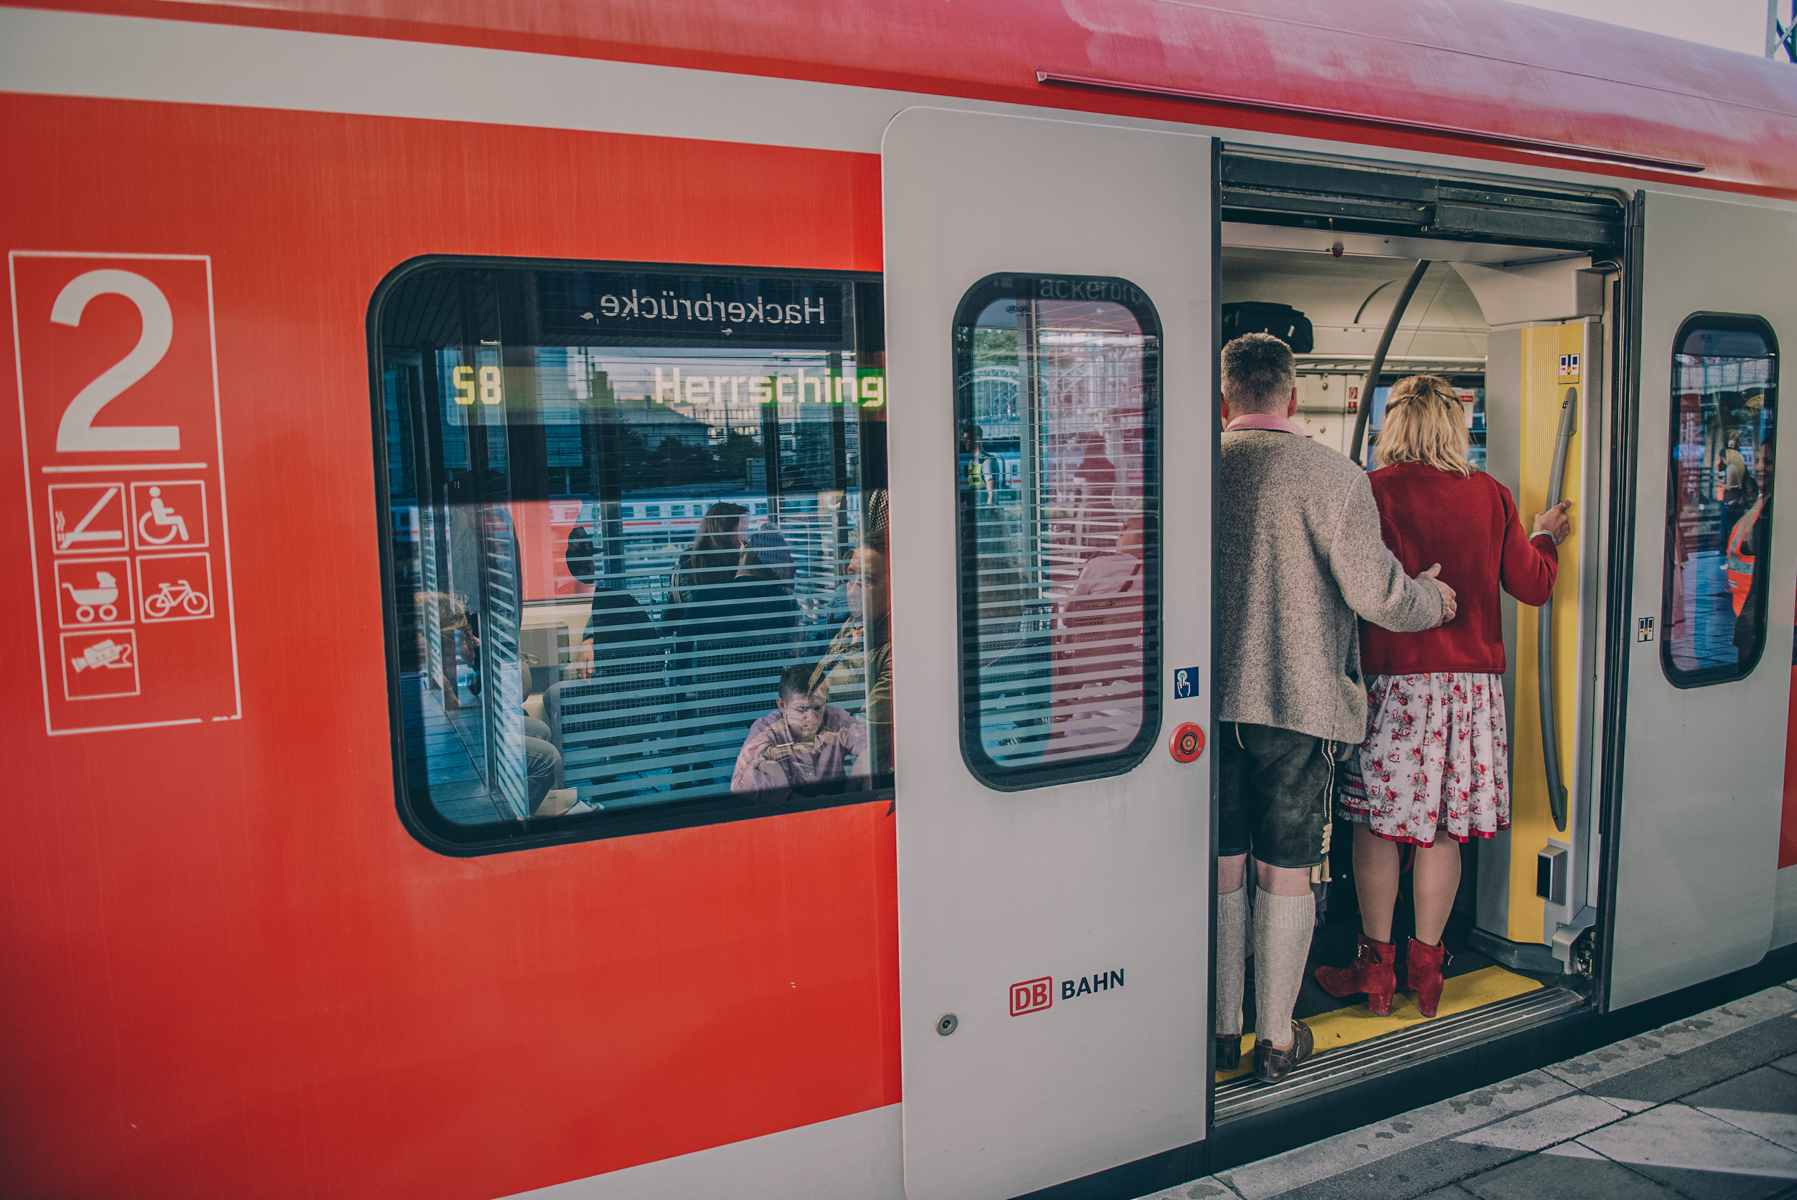 S Bahn München Lokführer Wiesn 092019 5 – ©wunderland media GmbH